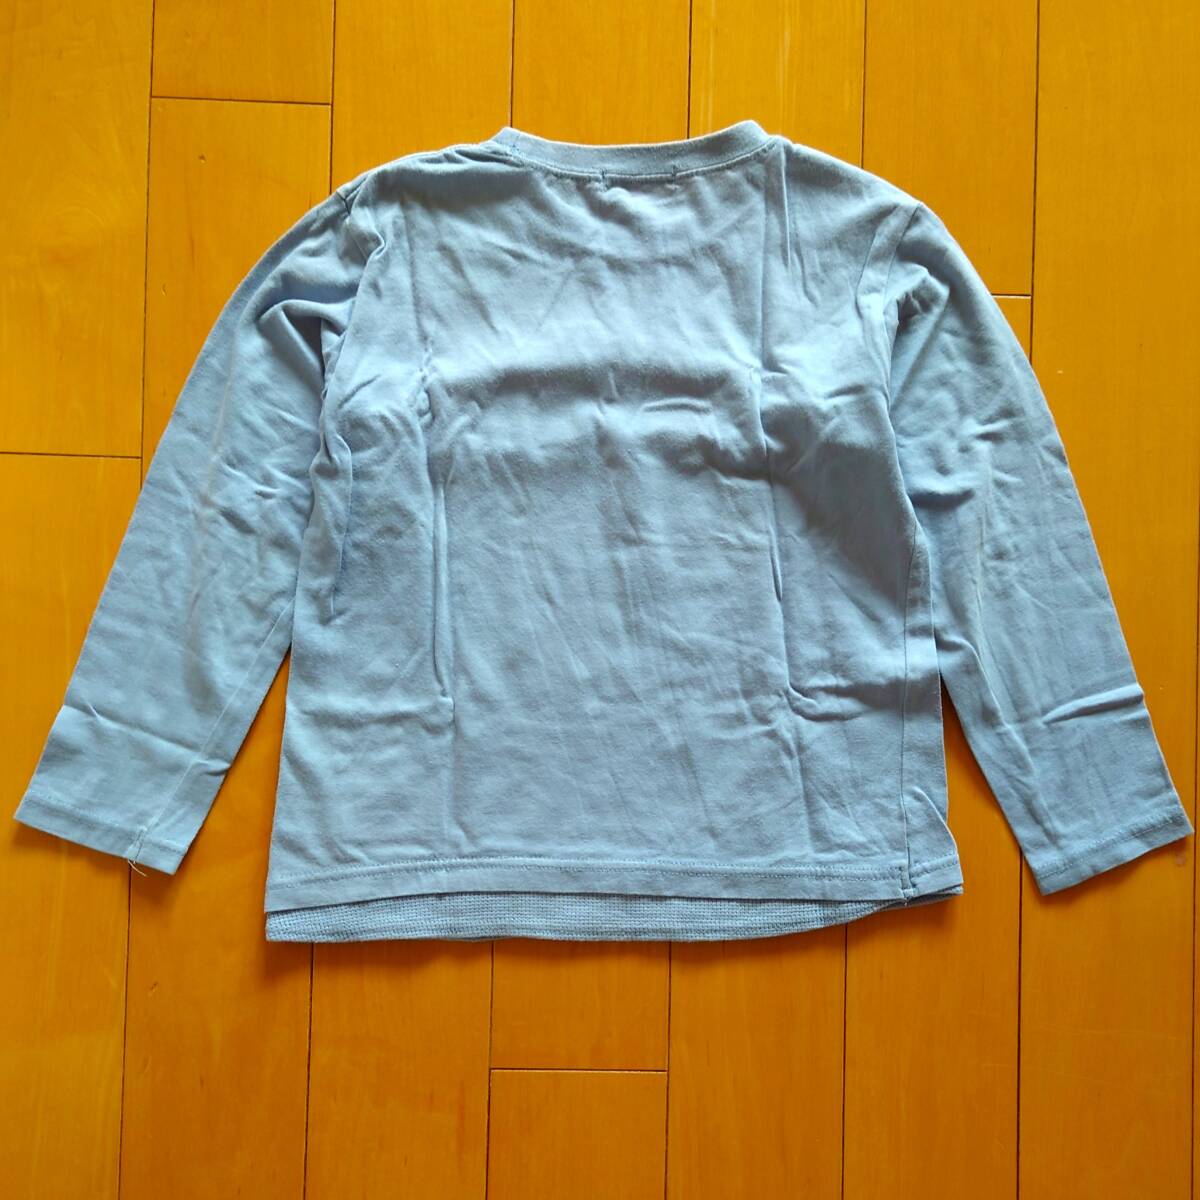  Logo металлик принт футболка с длинным рукавом ( бледно-голубой ) / 120 размер [BRANSHES / Blanc shes] стоимость доставки 180 иен 